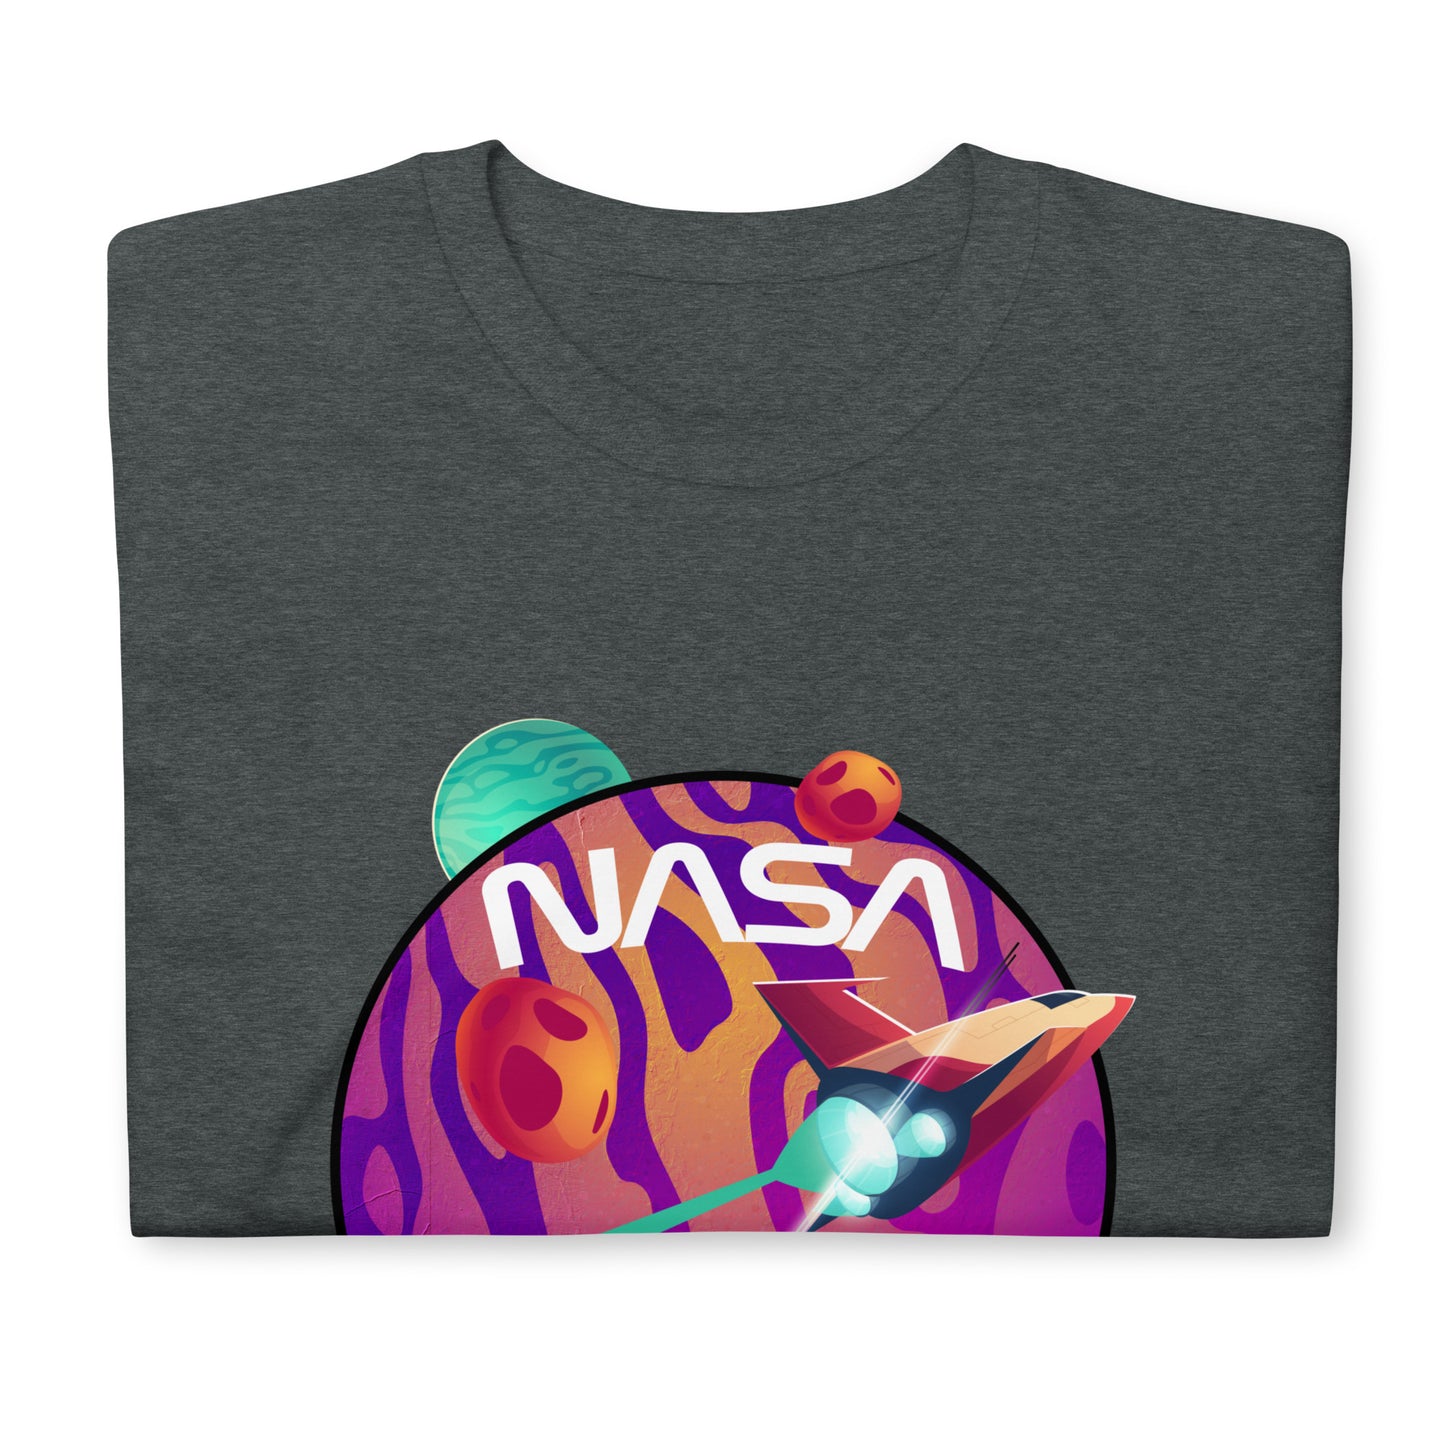 Nasa style #1 Unisex T-Shirt